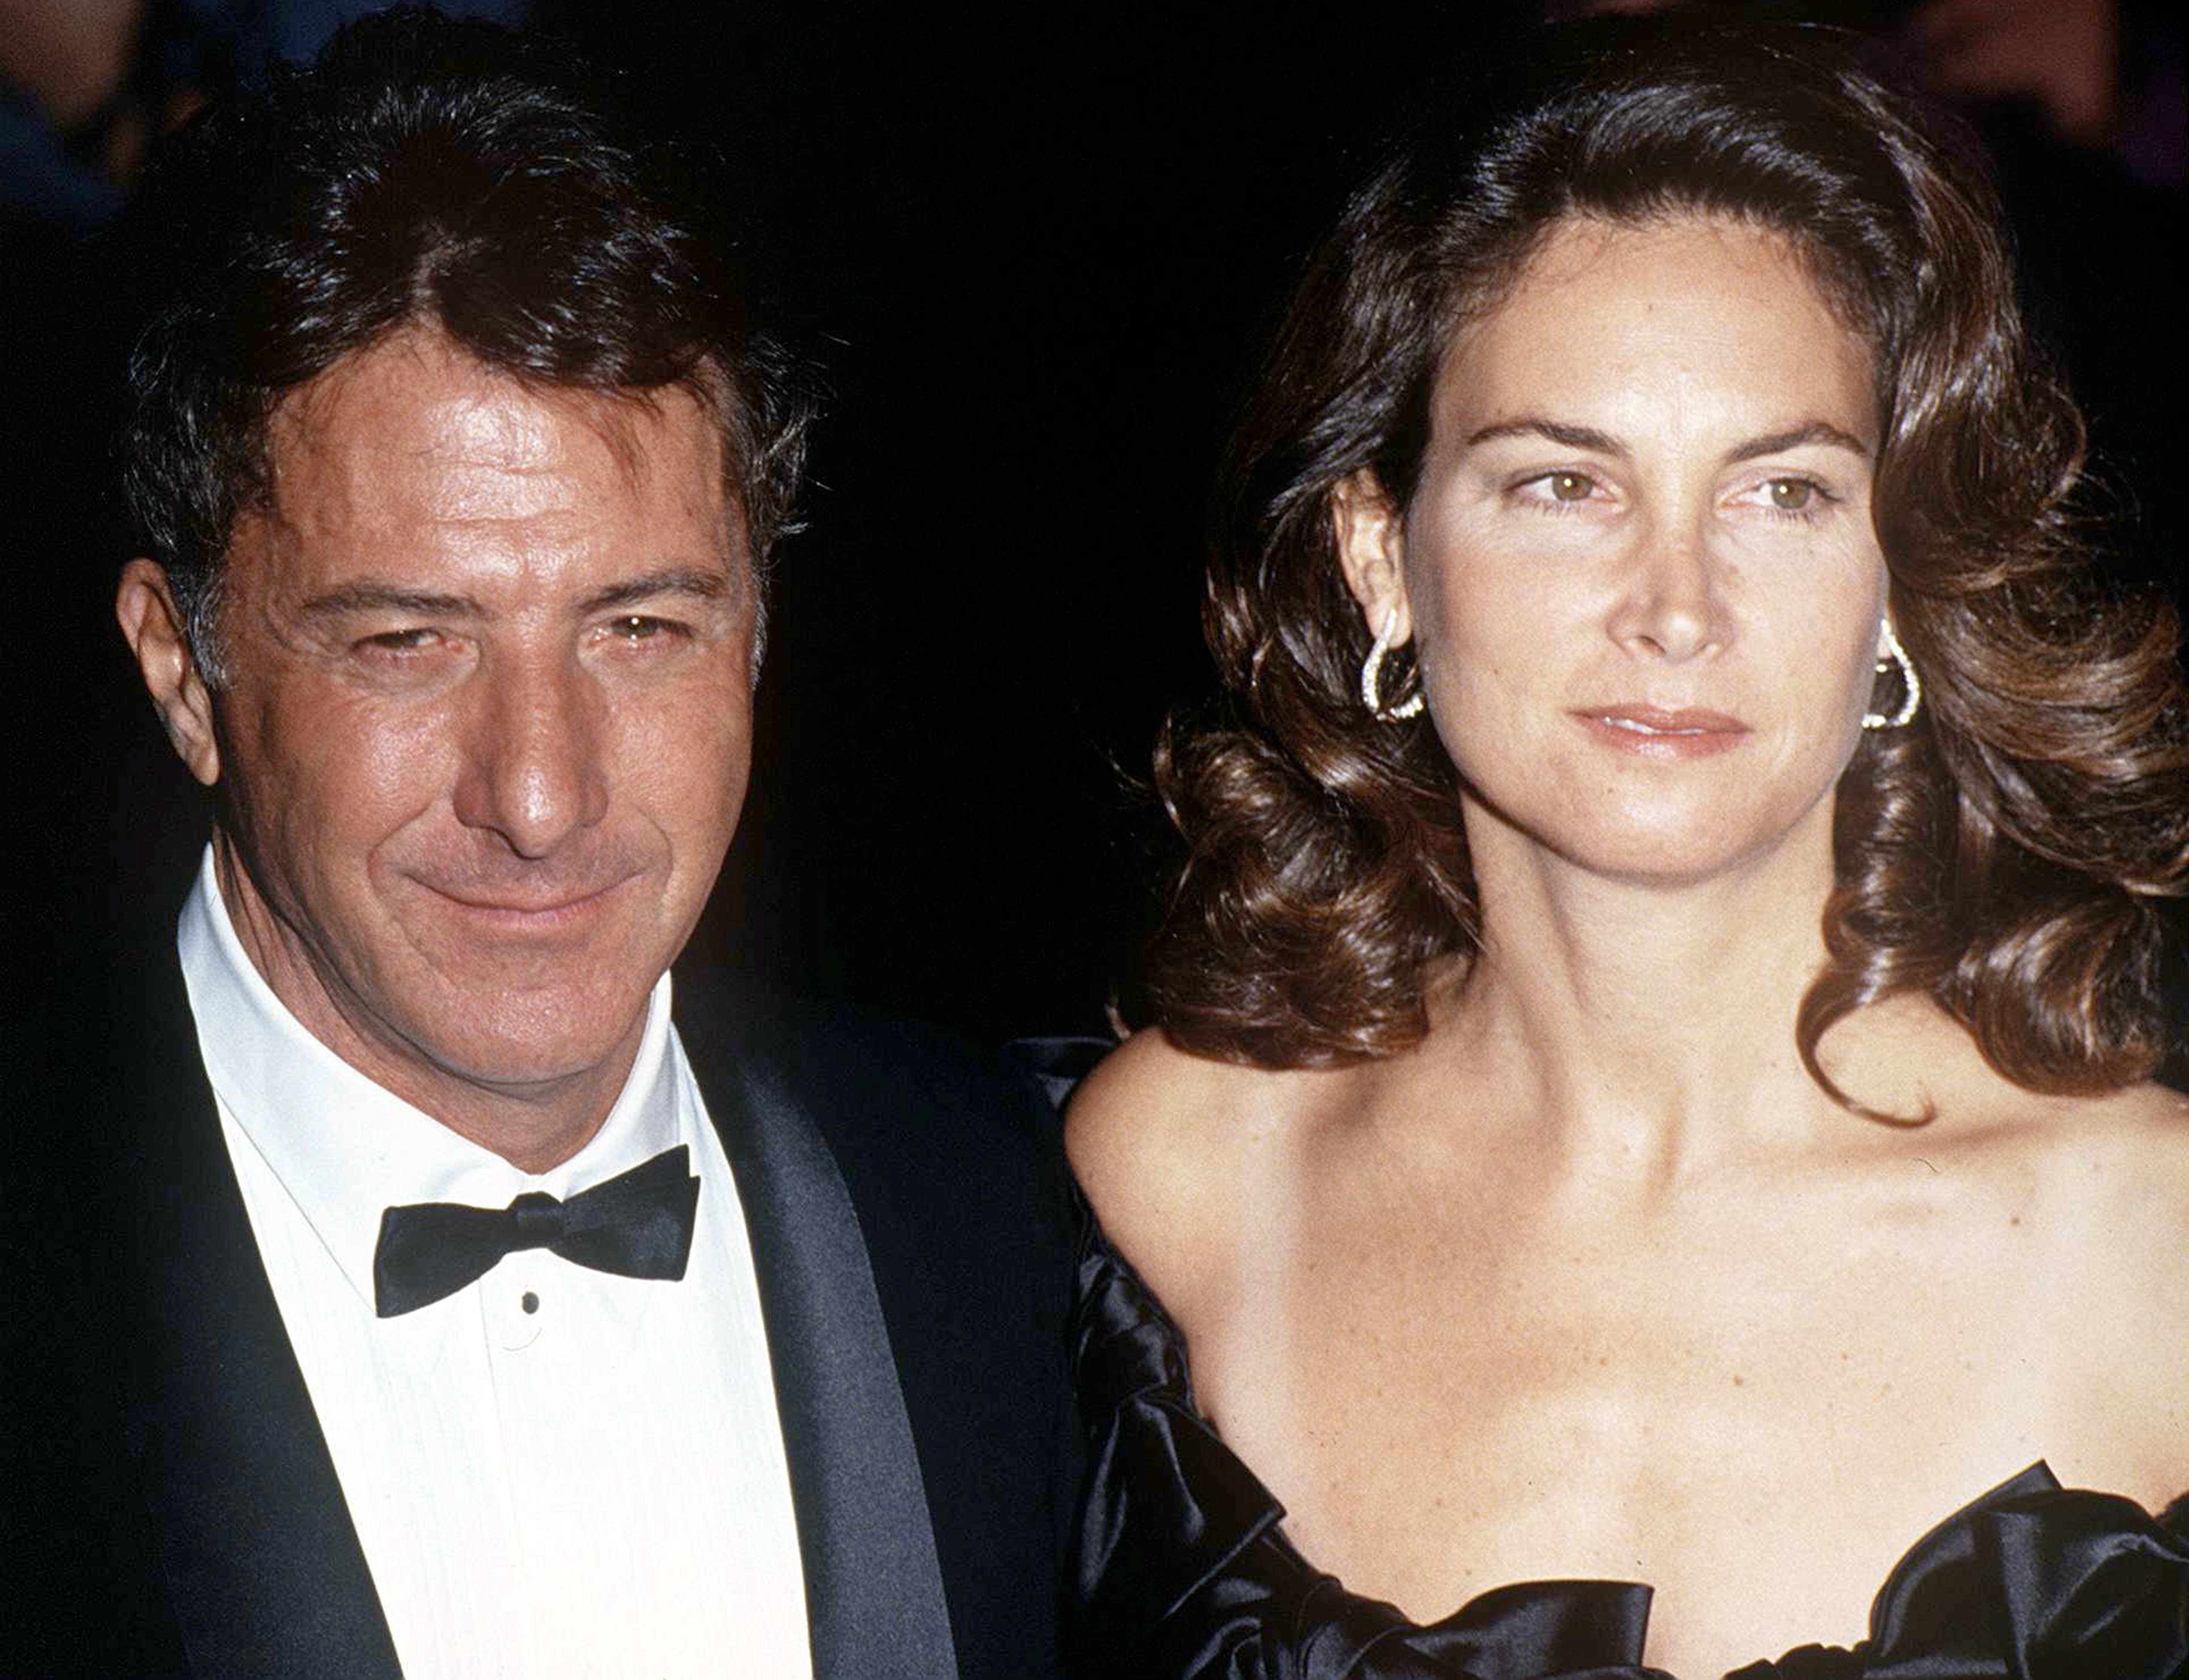 L'acteur et la femme en 1990. | Source : Getty Images